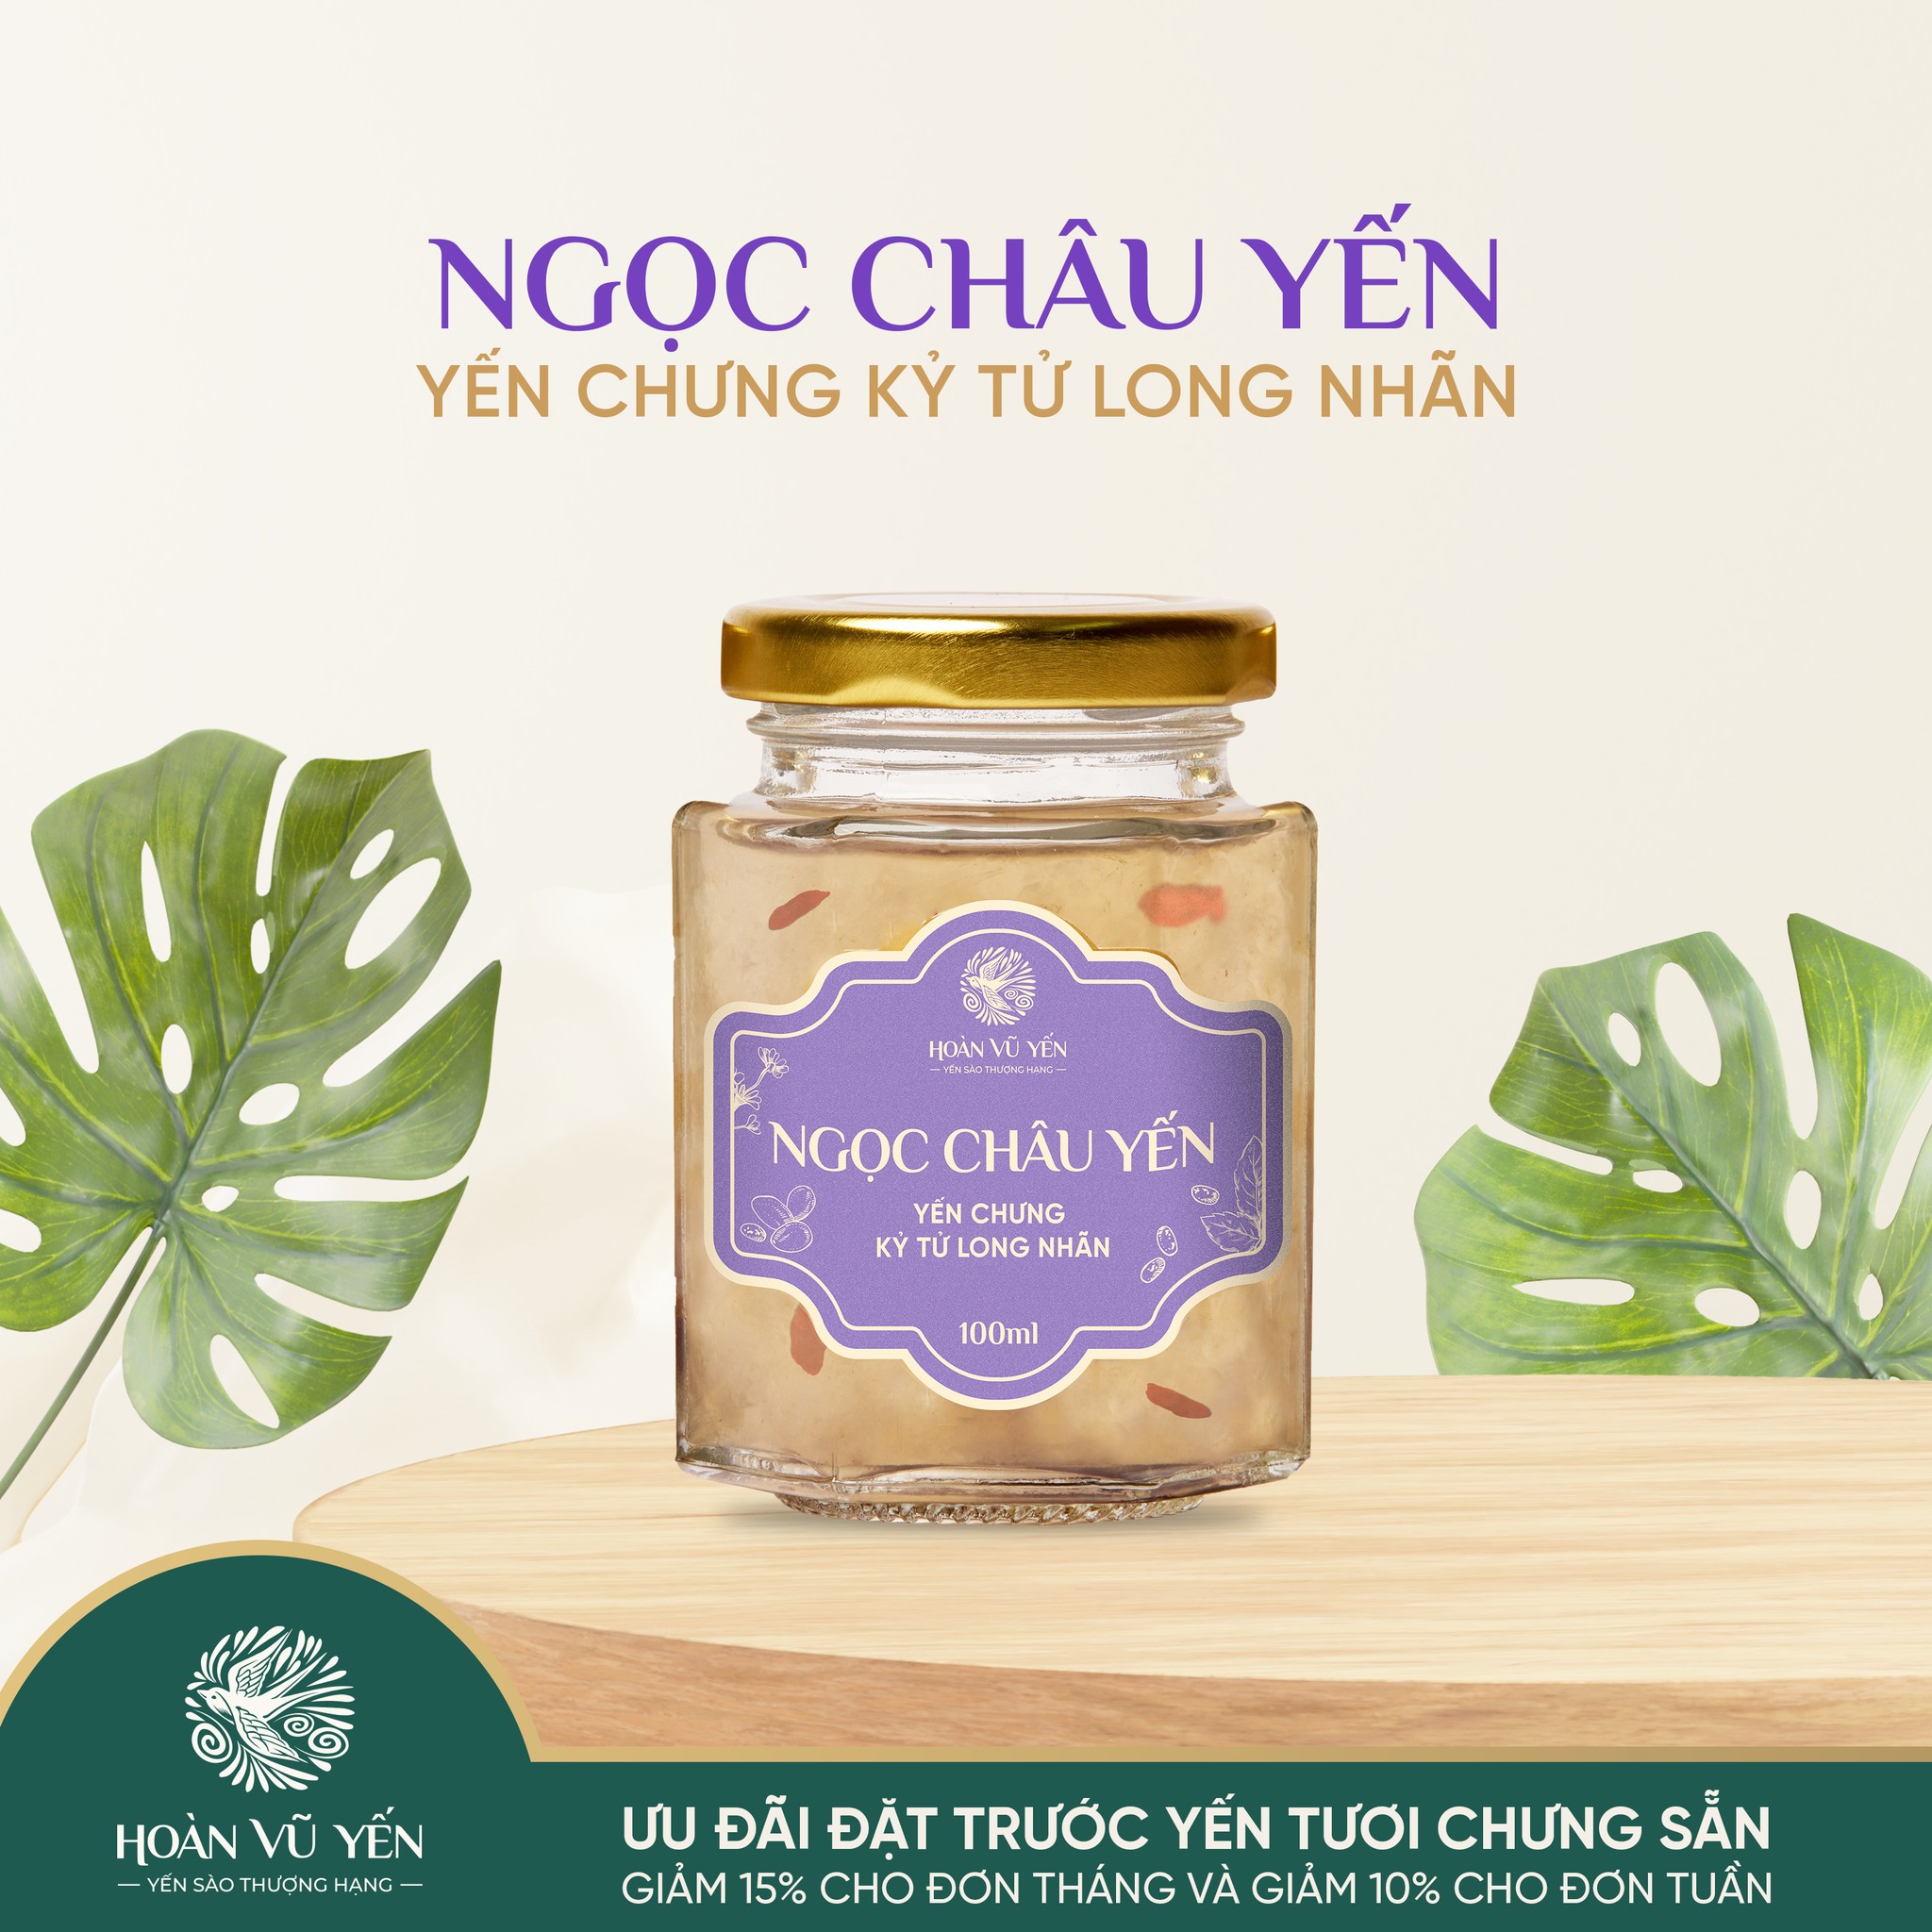 Ngoc Chau Yen Yen chng ky tu long nhan